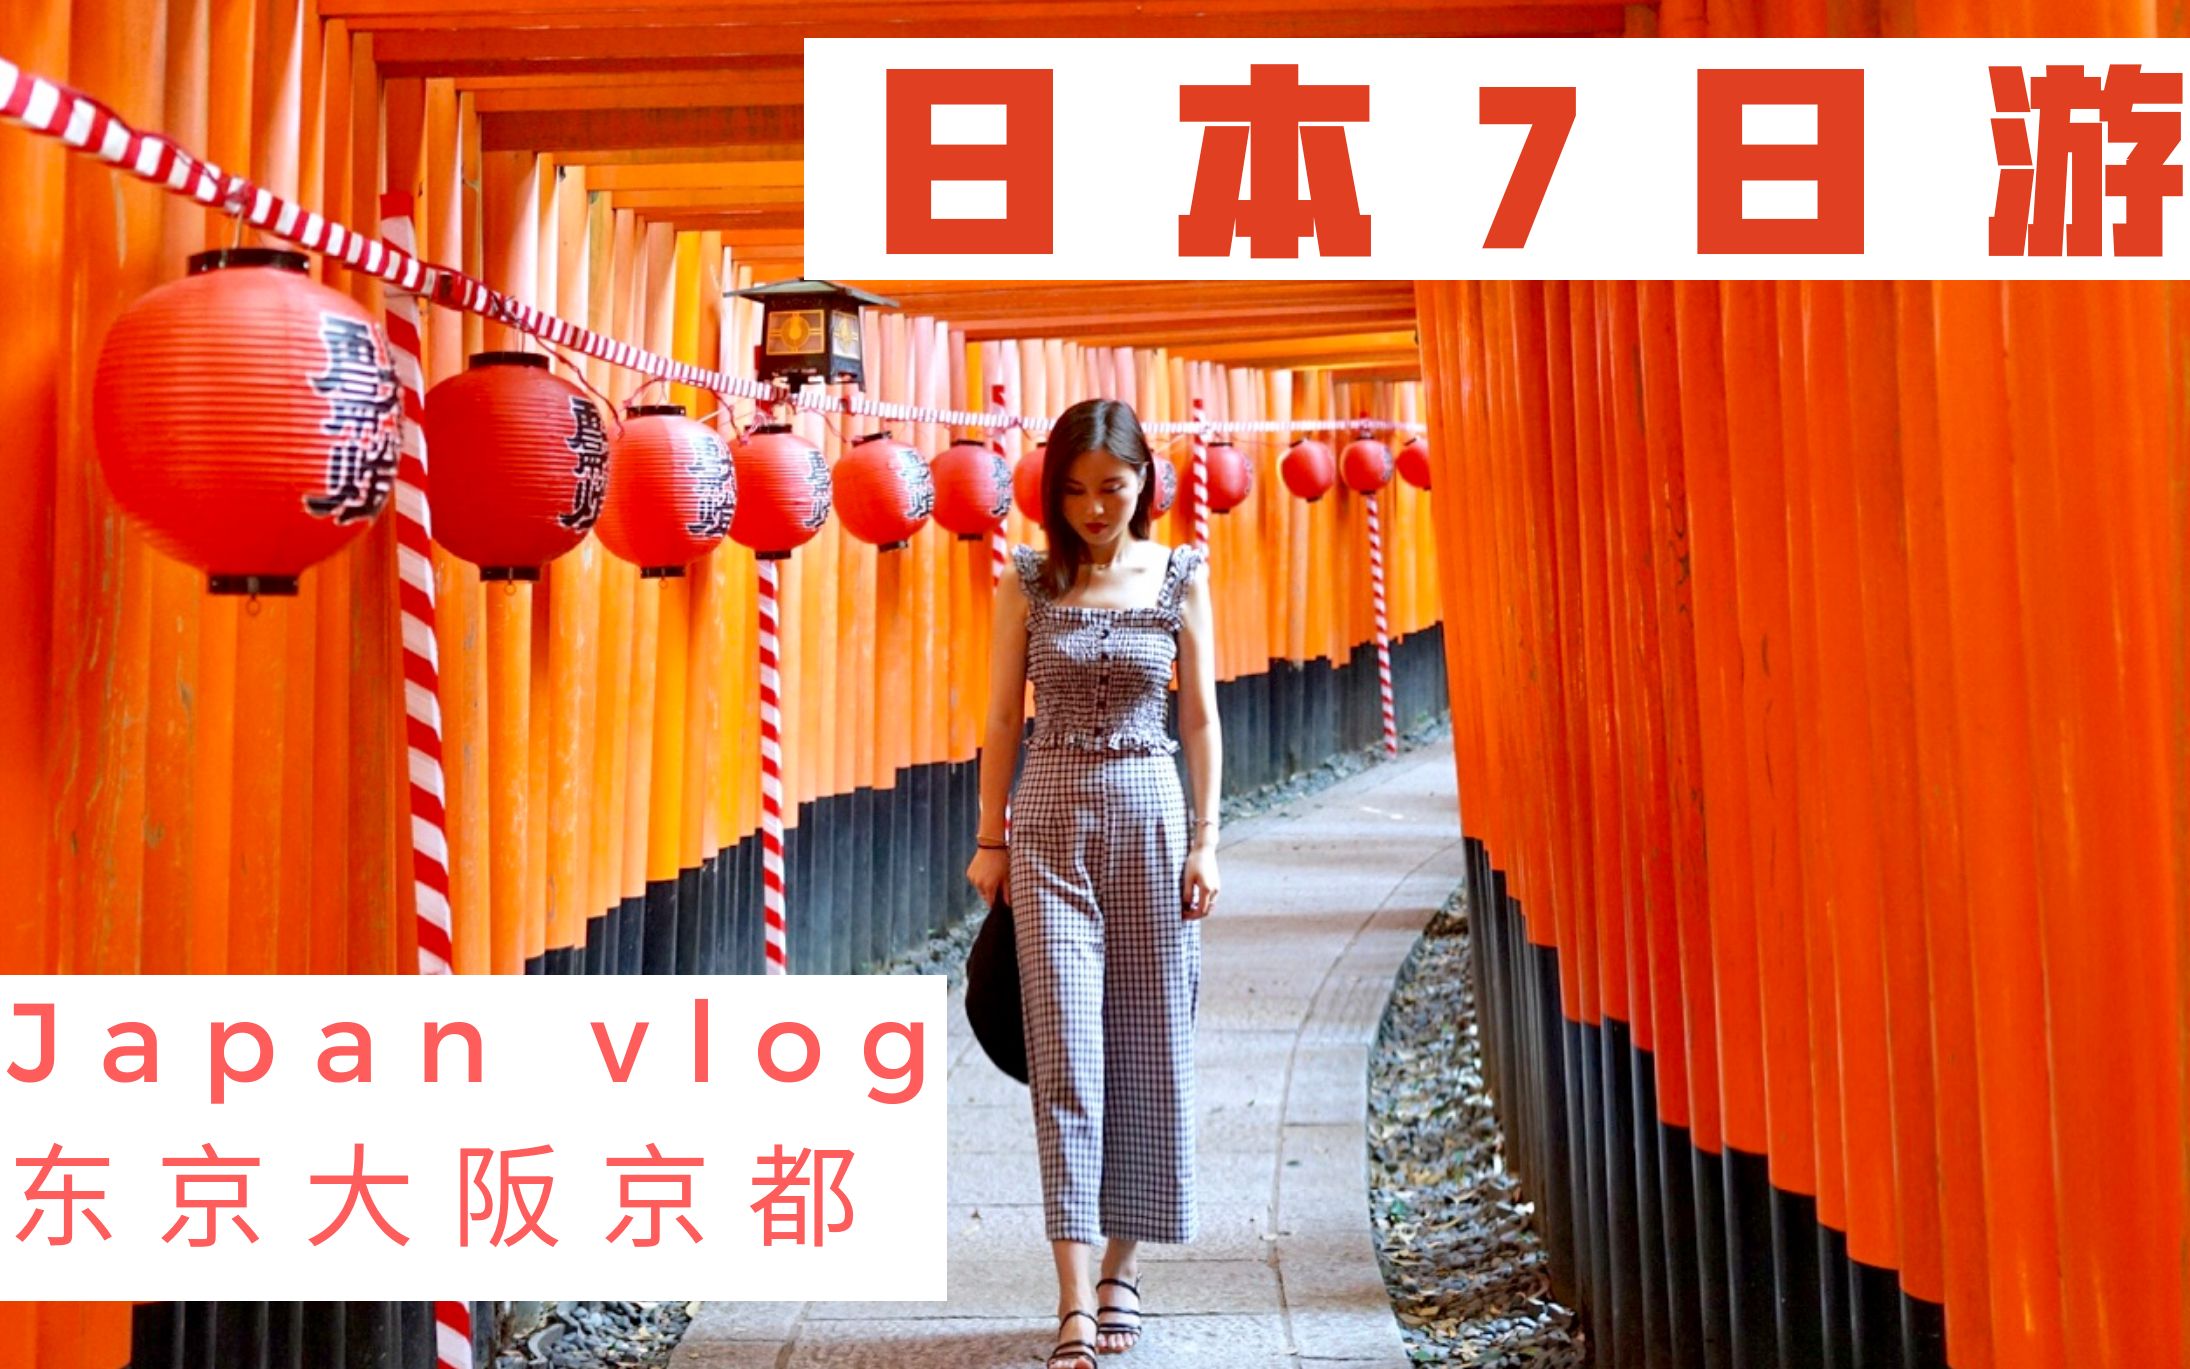 【丢丢】Japan Vlog 【日本7日游】东京 + 京都 + 大阪 | 吃、住、购物 全攻略 | 环球影城 | 和牛 | 药妆